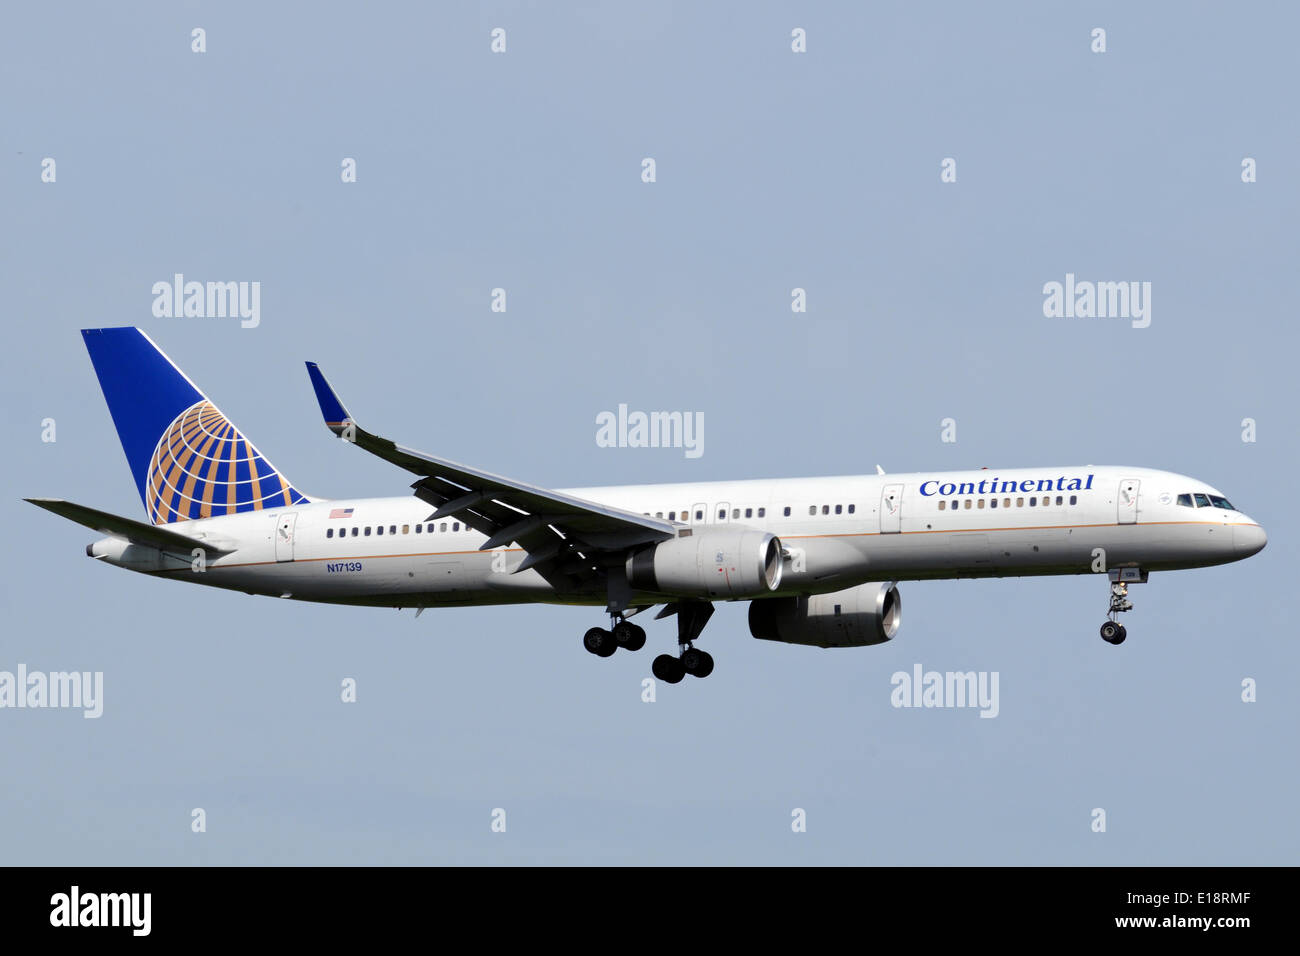 Ein Passagierflugzeug Boeing 757-200 der amerikanischen Fluggesellschaft Continental Airlines ist am Manchester Ringway Airport landen. Stockfoto